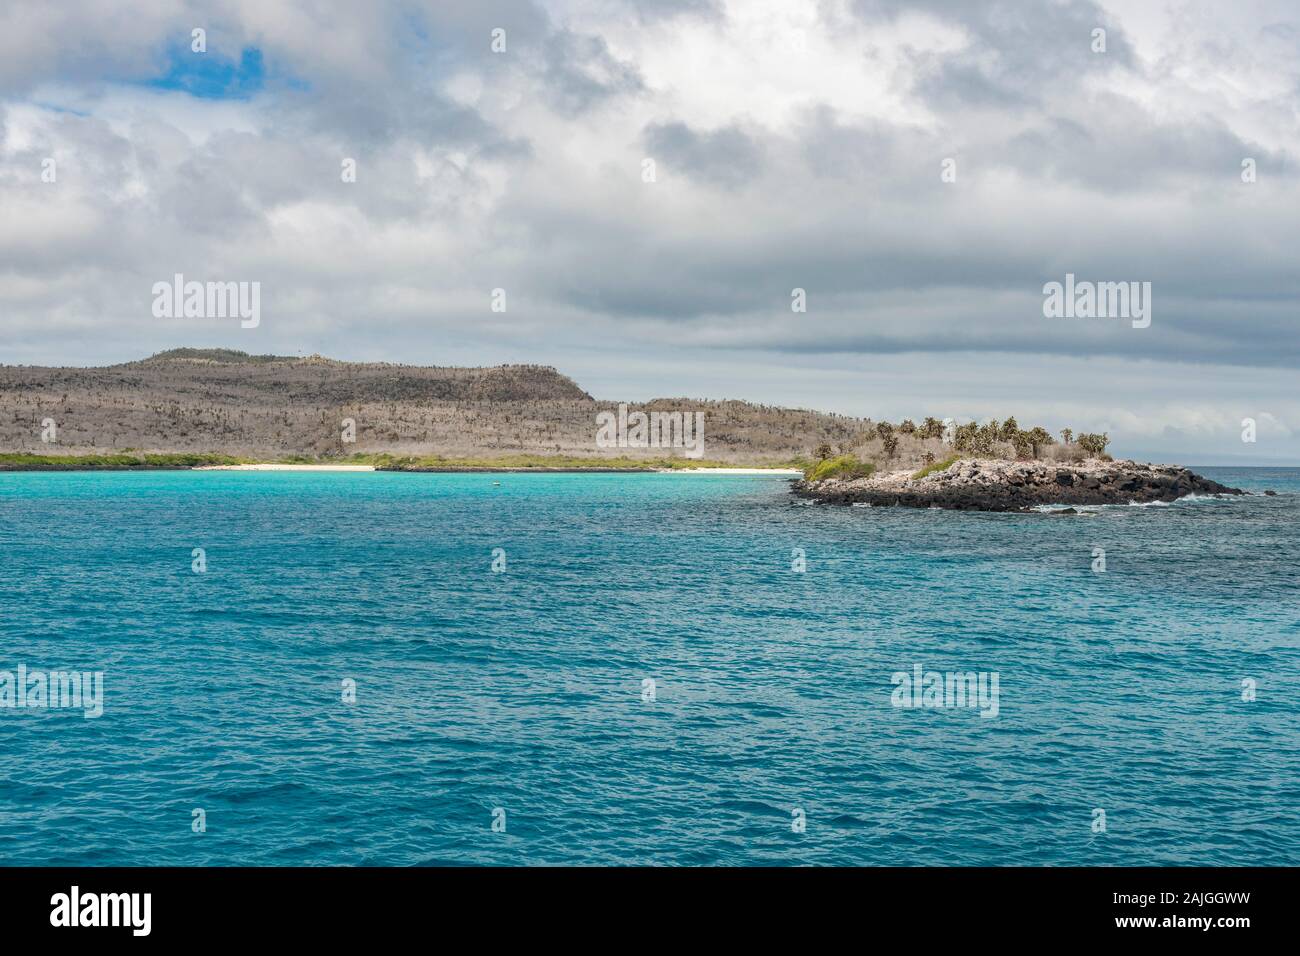 Sante Fe island, Galapagos, Ecuador. Stock Photo